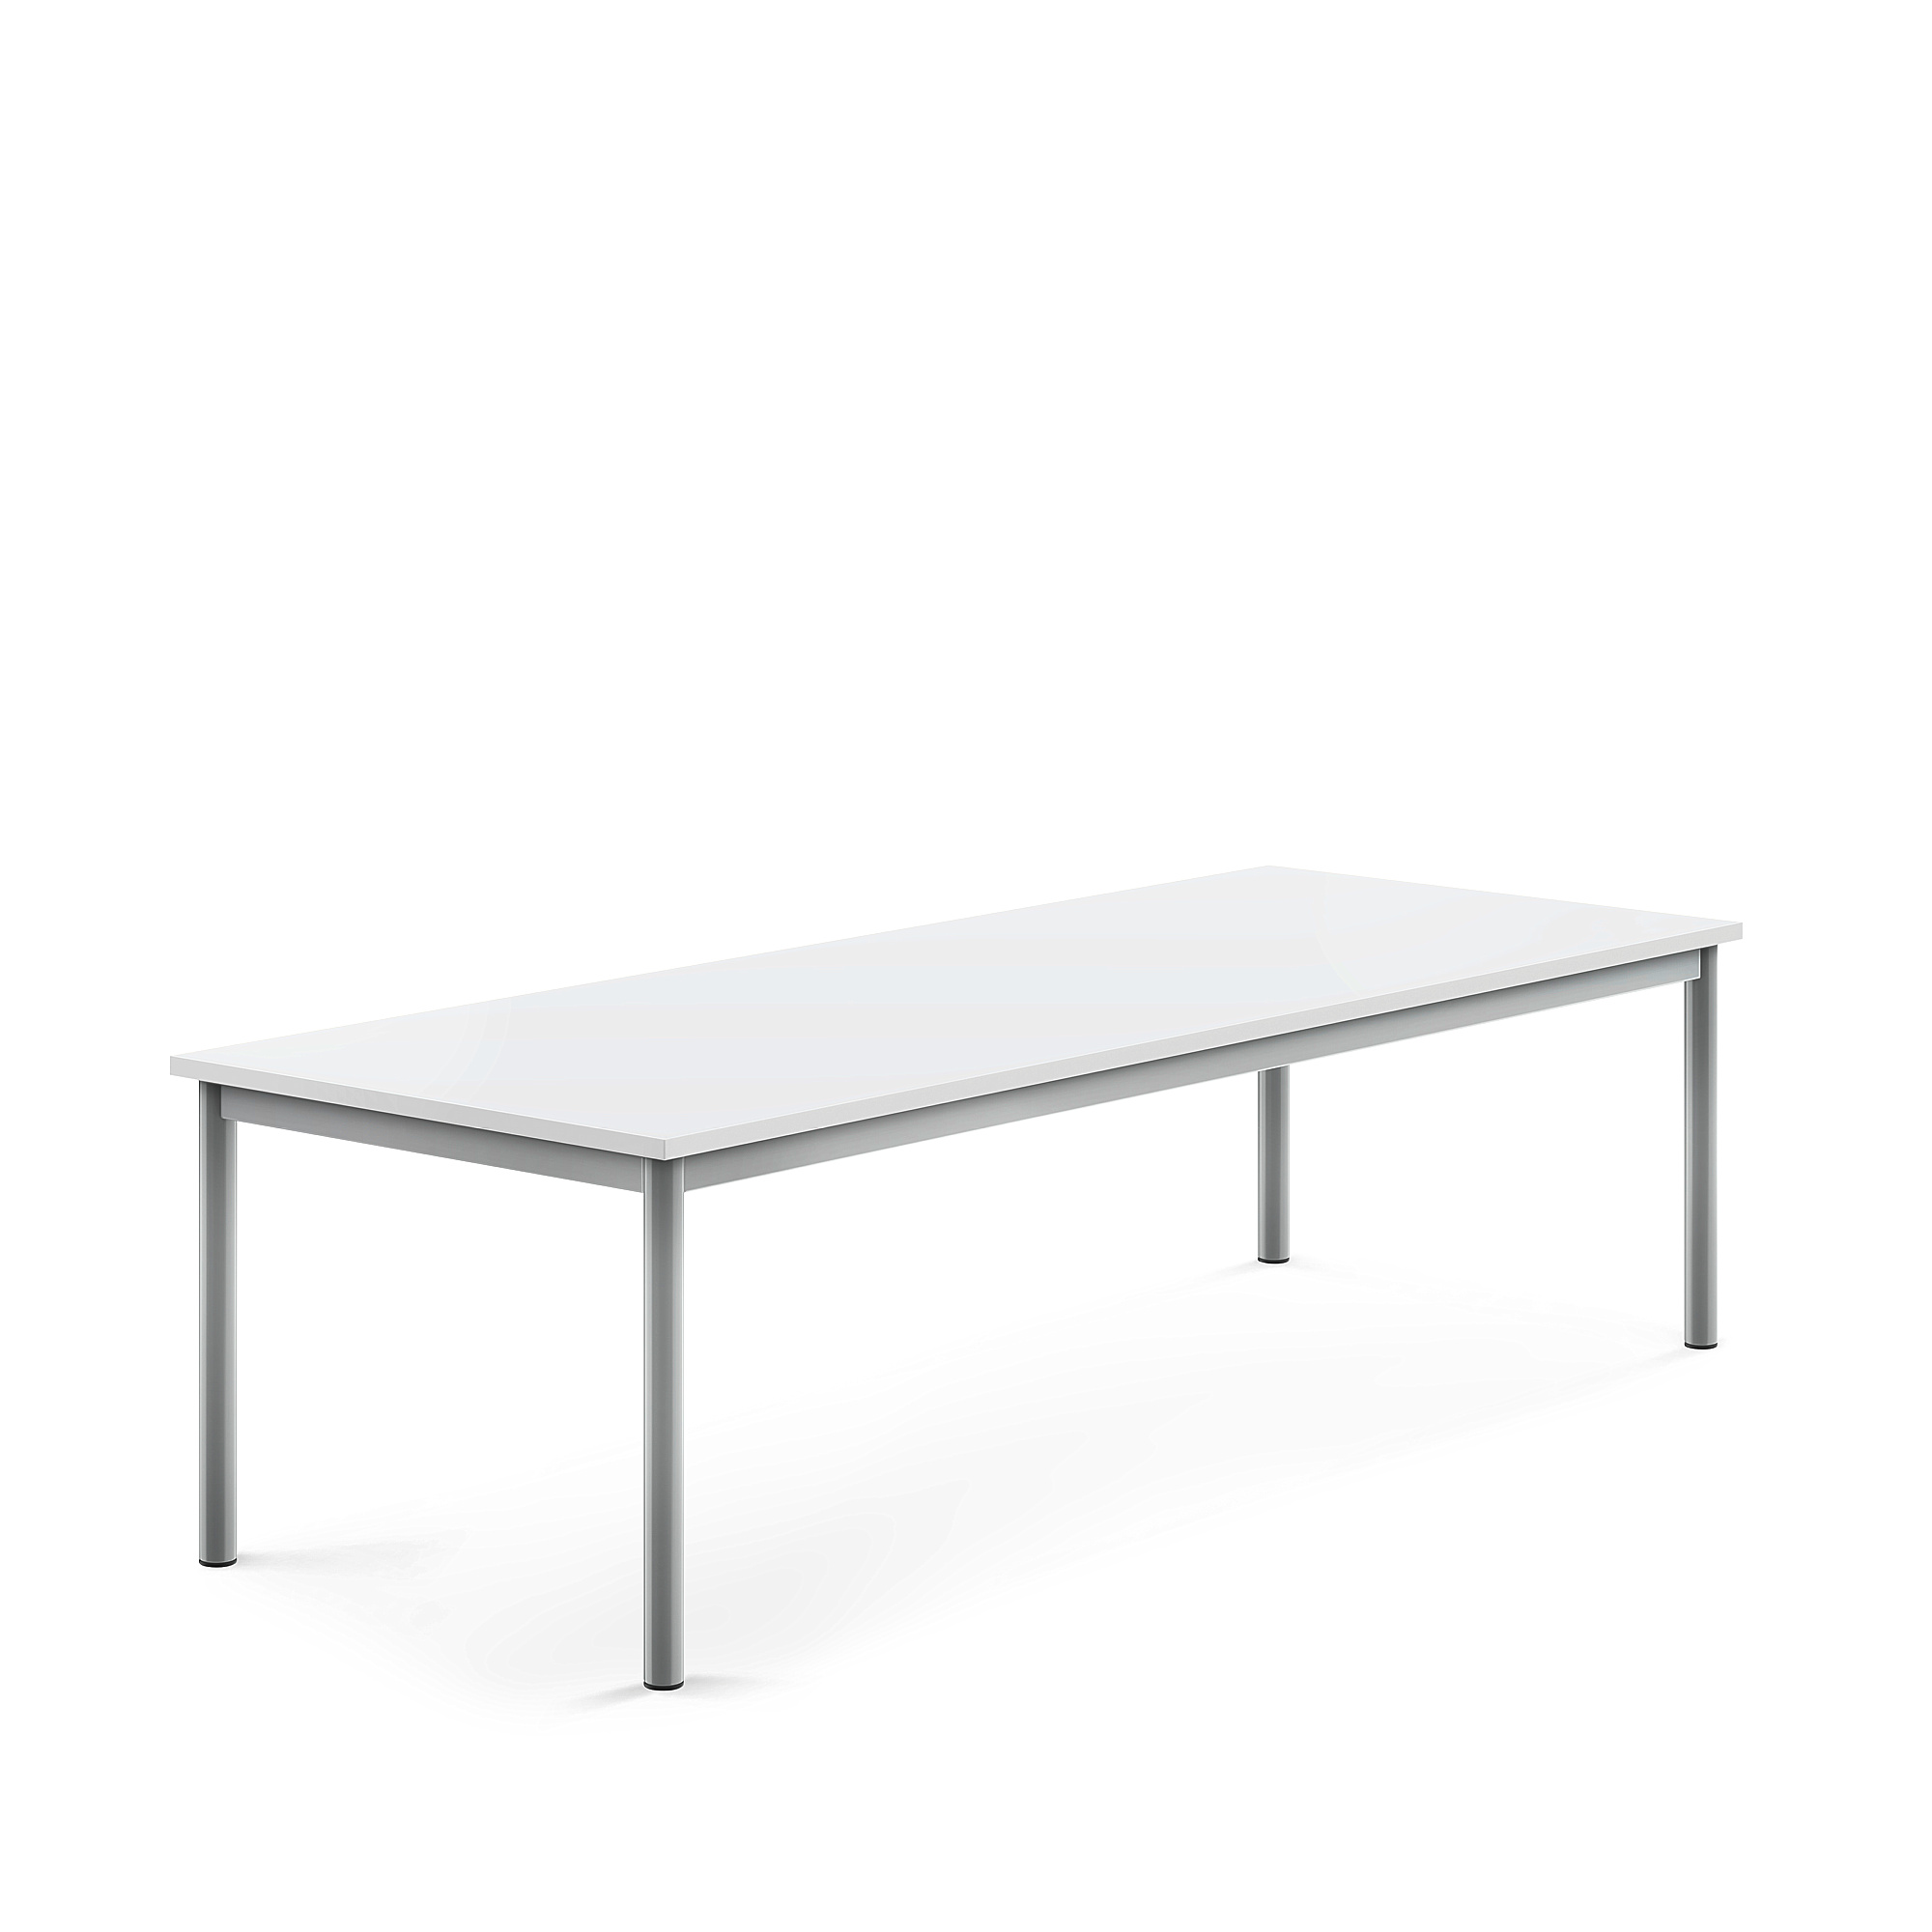 Stůl BORÅS, 1800x700x500 mm, stříbrné nohy, HPL deska, bílá